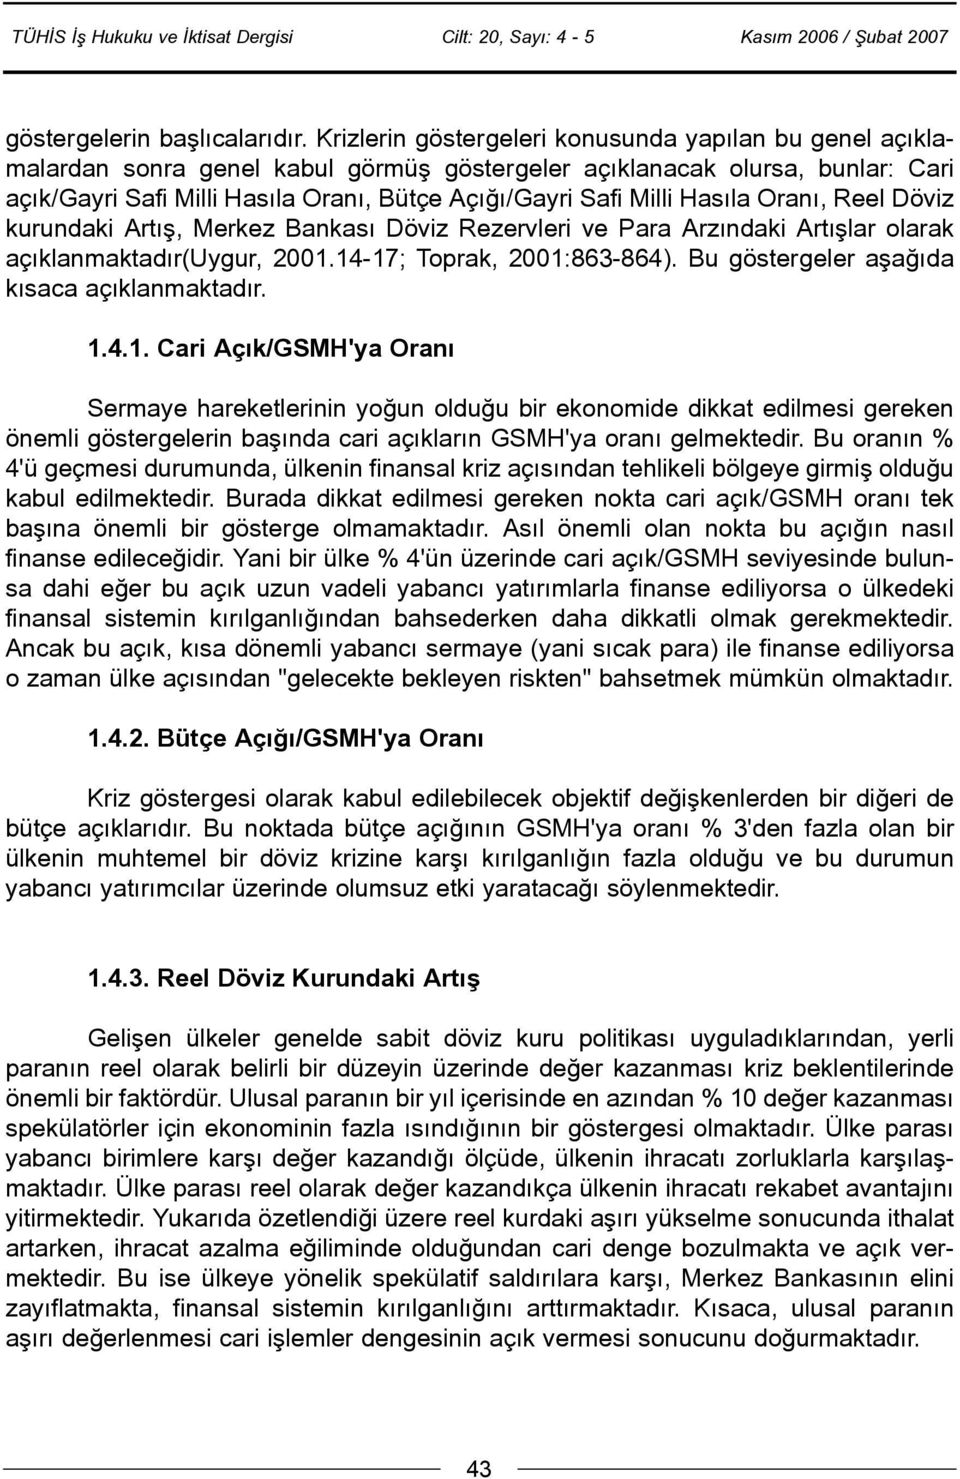 Hasýla Oraný, Reel Döviz kurundaki Artýþ, Merkez Bankasý Döviz Rezervleri ve Para Arzýndaki Artýþlar olarak açýklanmaktadýr(uygur, 2001.14-17; Toprak, 2001:863-864).